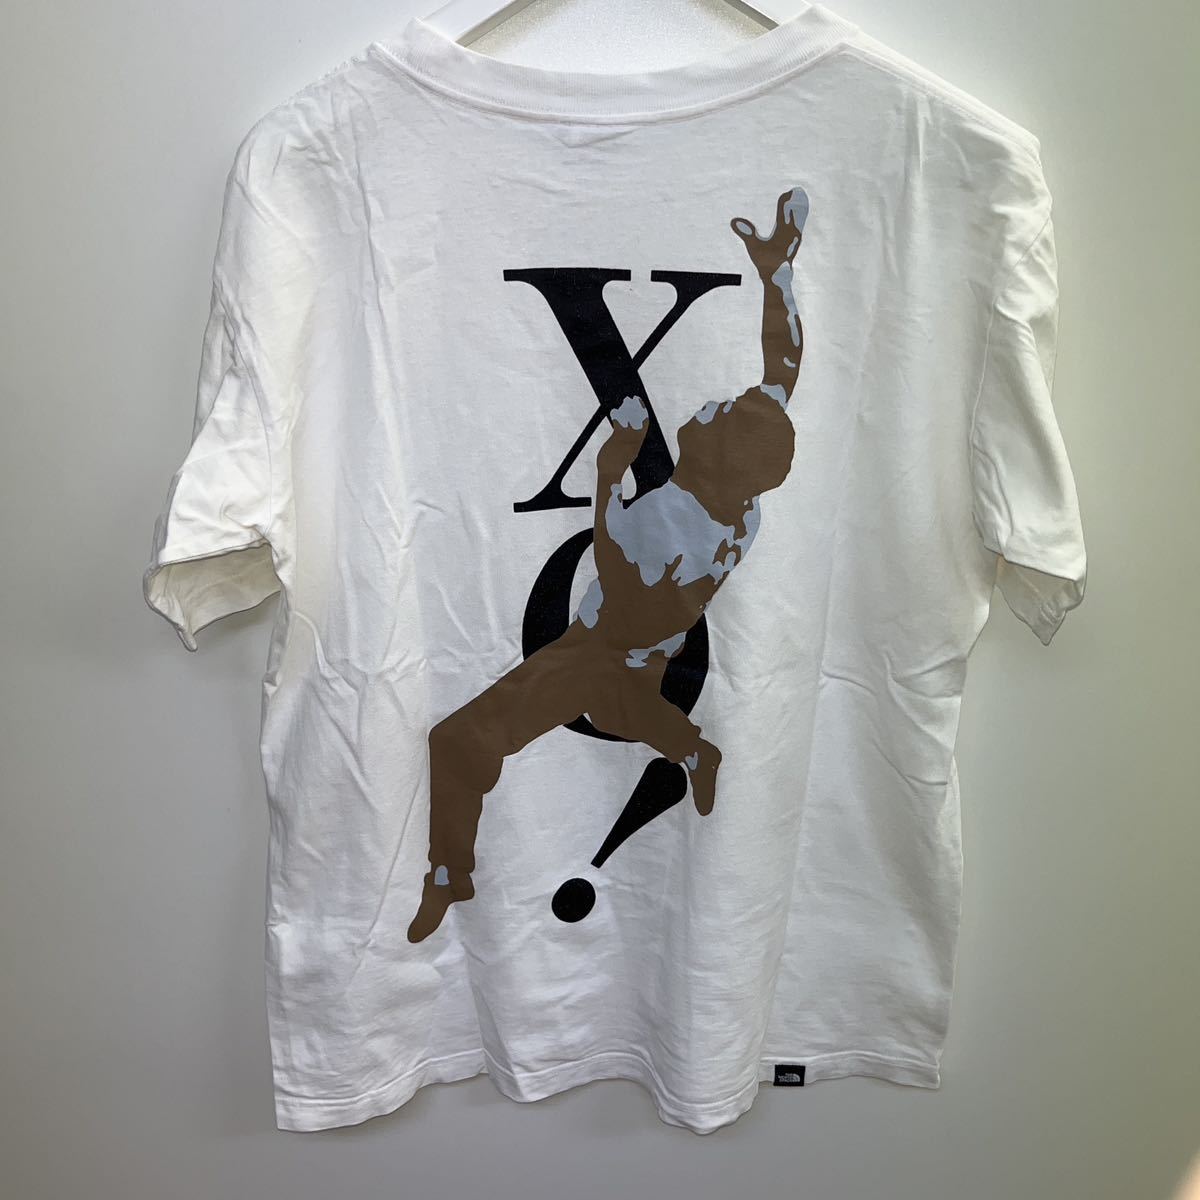 ◆希少◆THE NORTH FACE XO!クライミングTシャツ サイズM